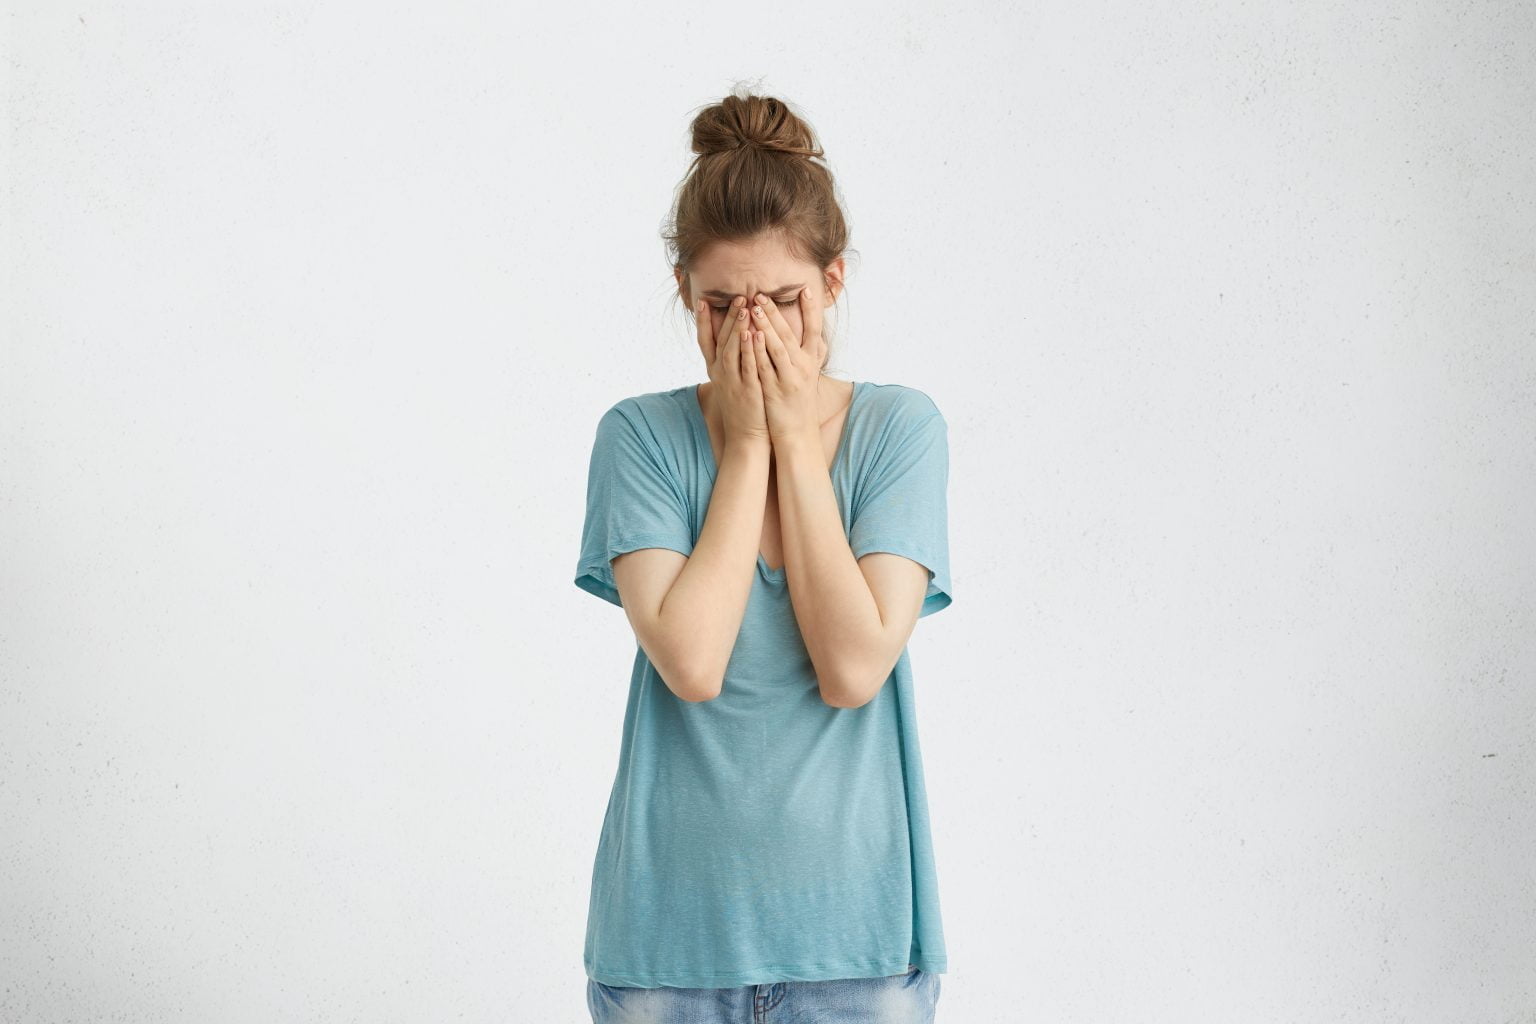 mujer desanimada decepcionada con moño de pelo vistiendo una camiseta suelta decepción